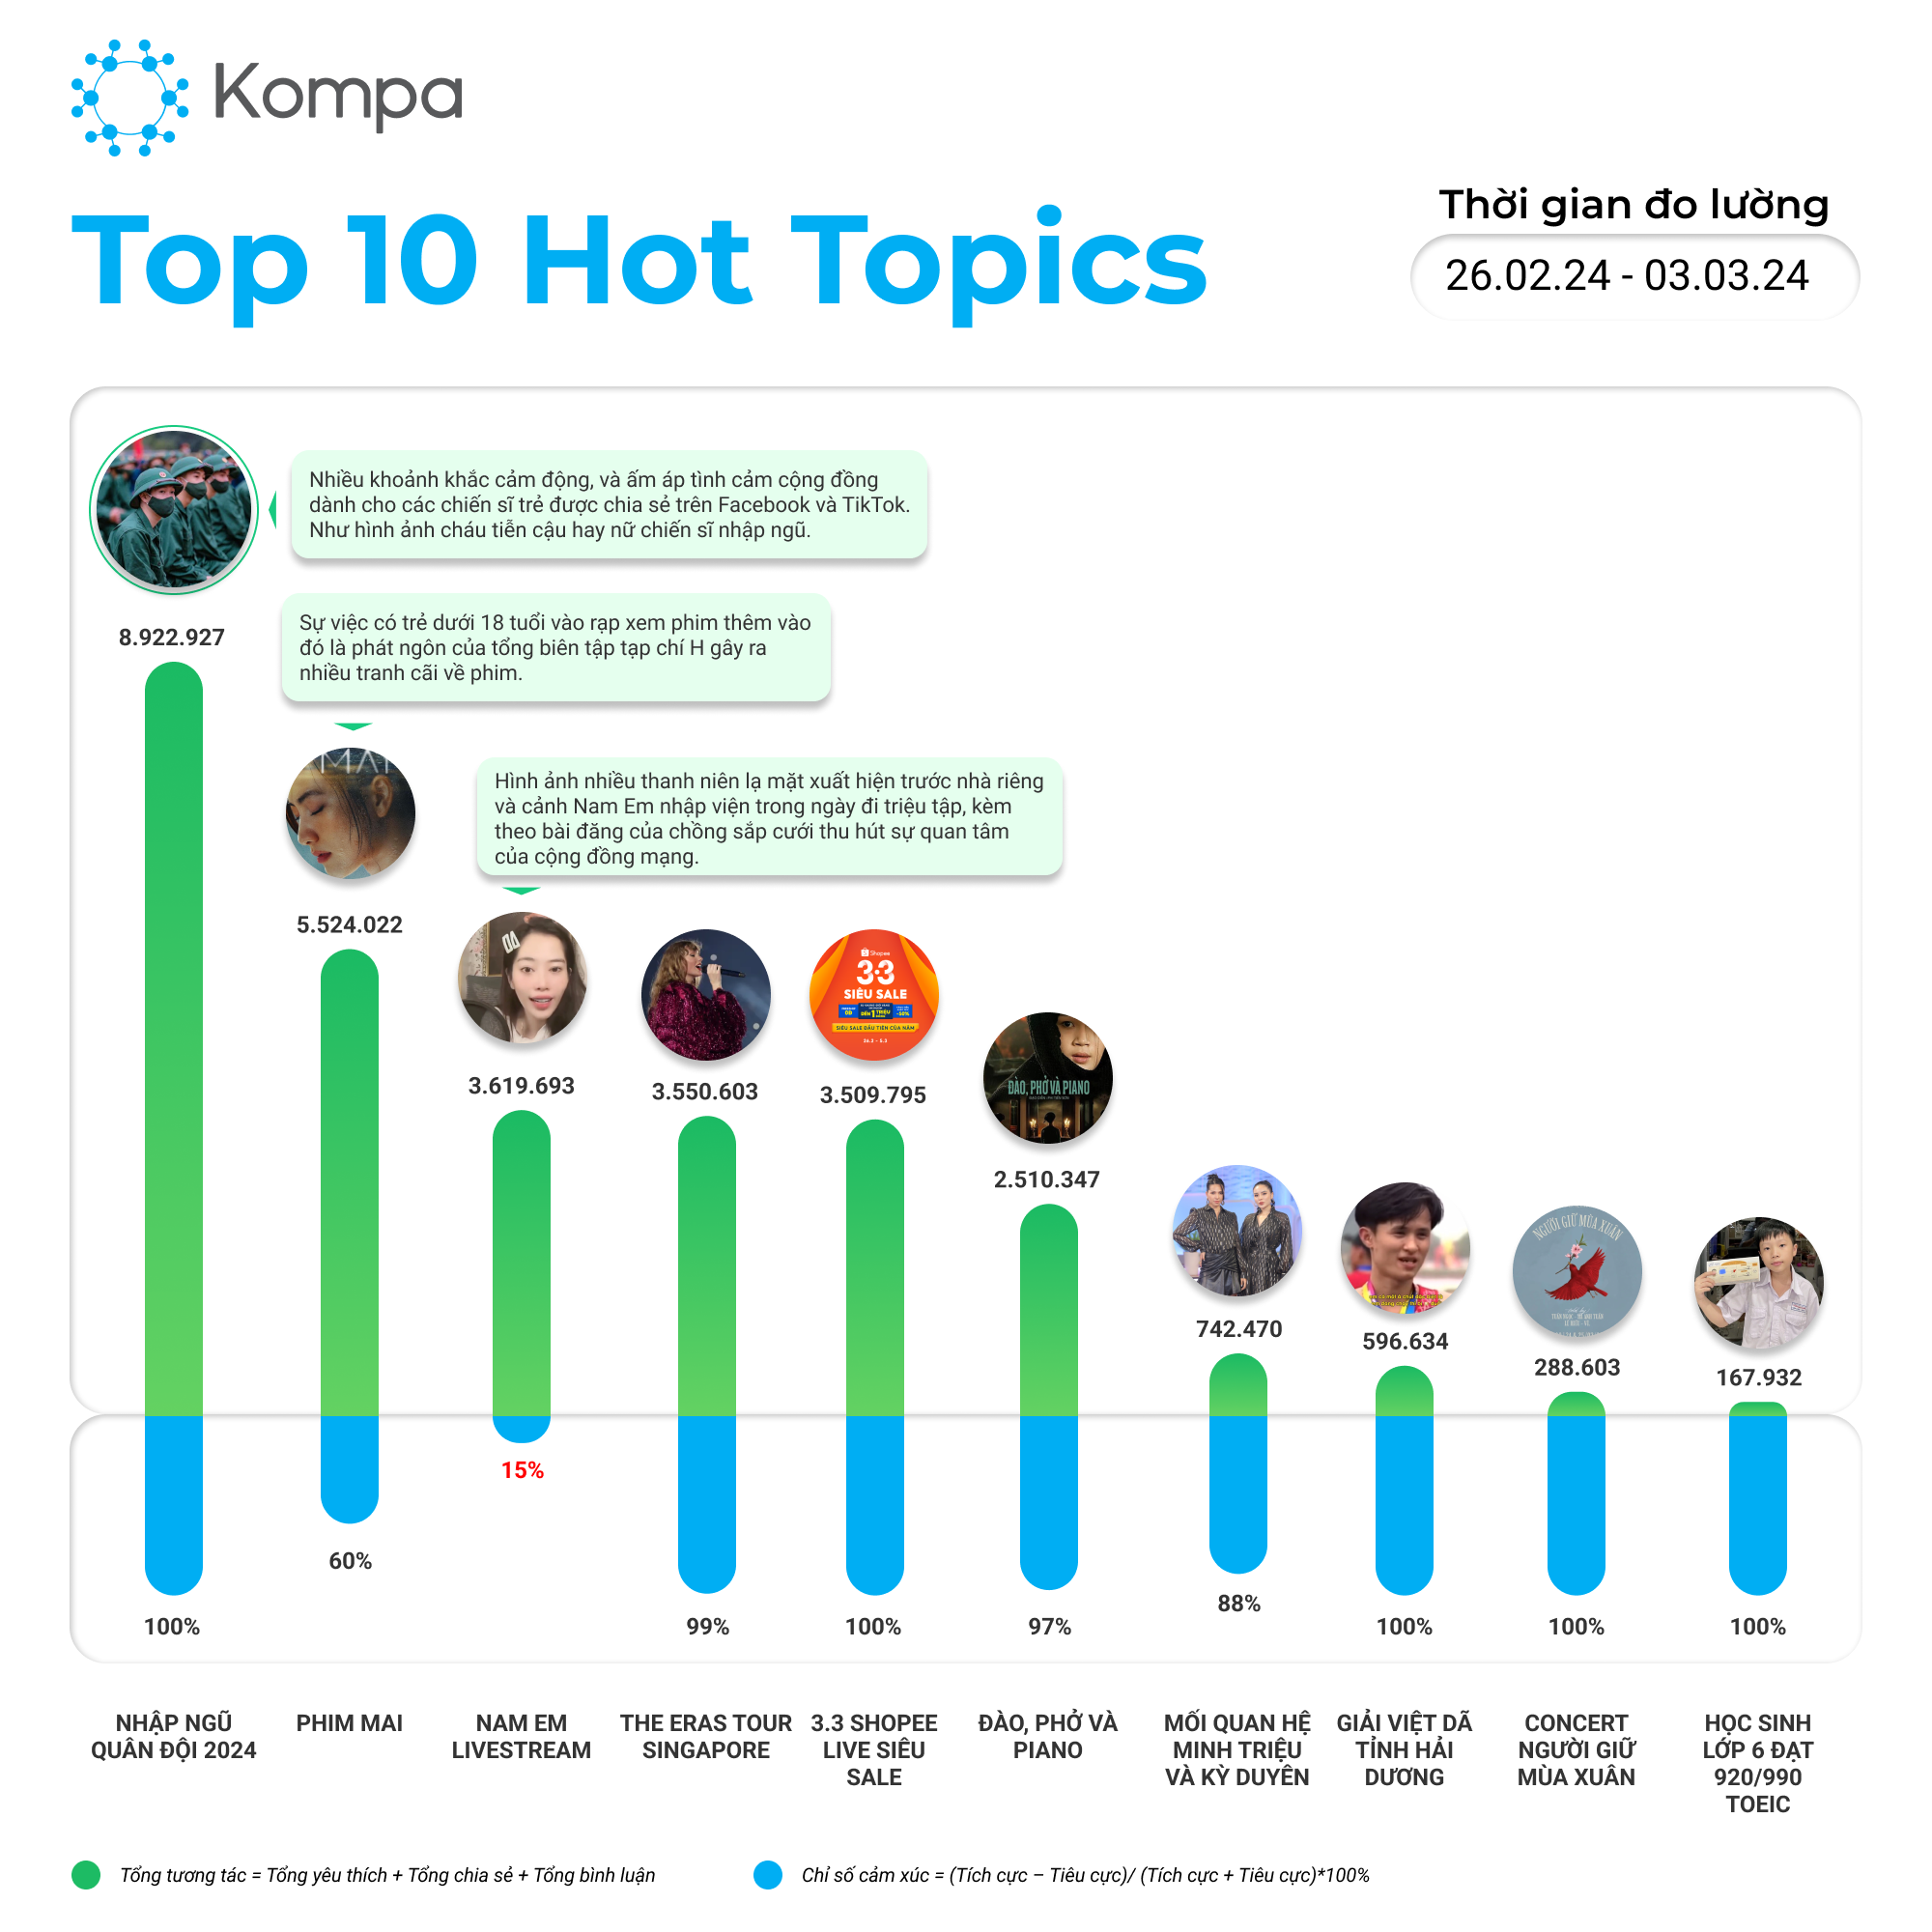 Hot topics 3.3